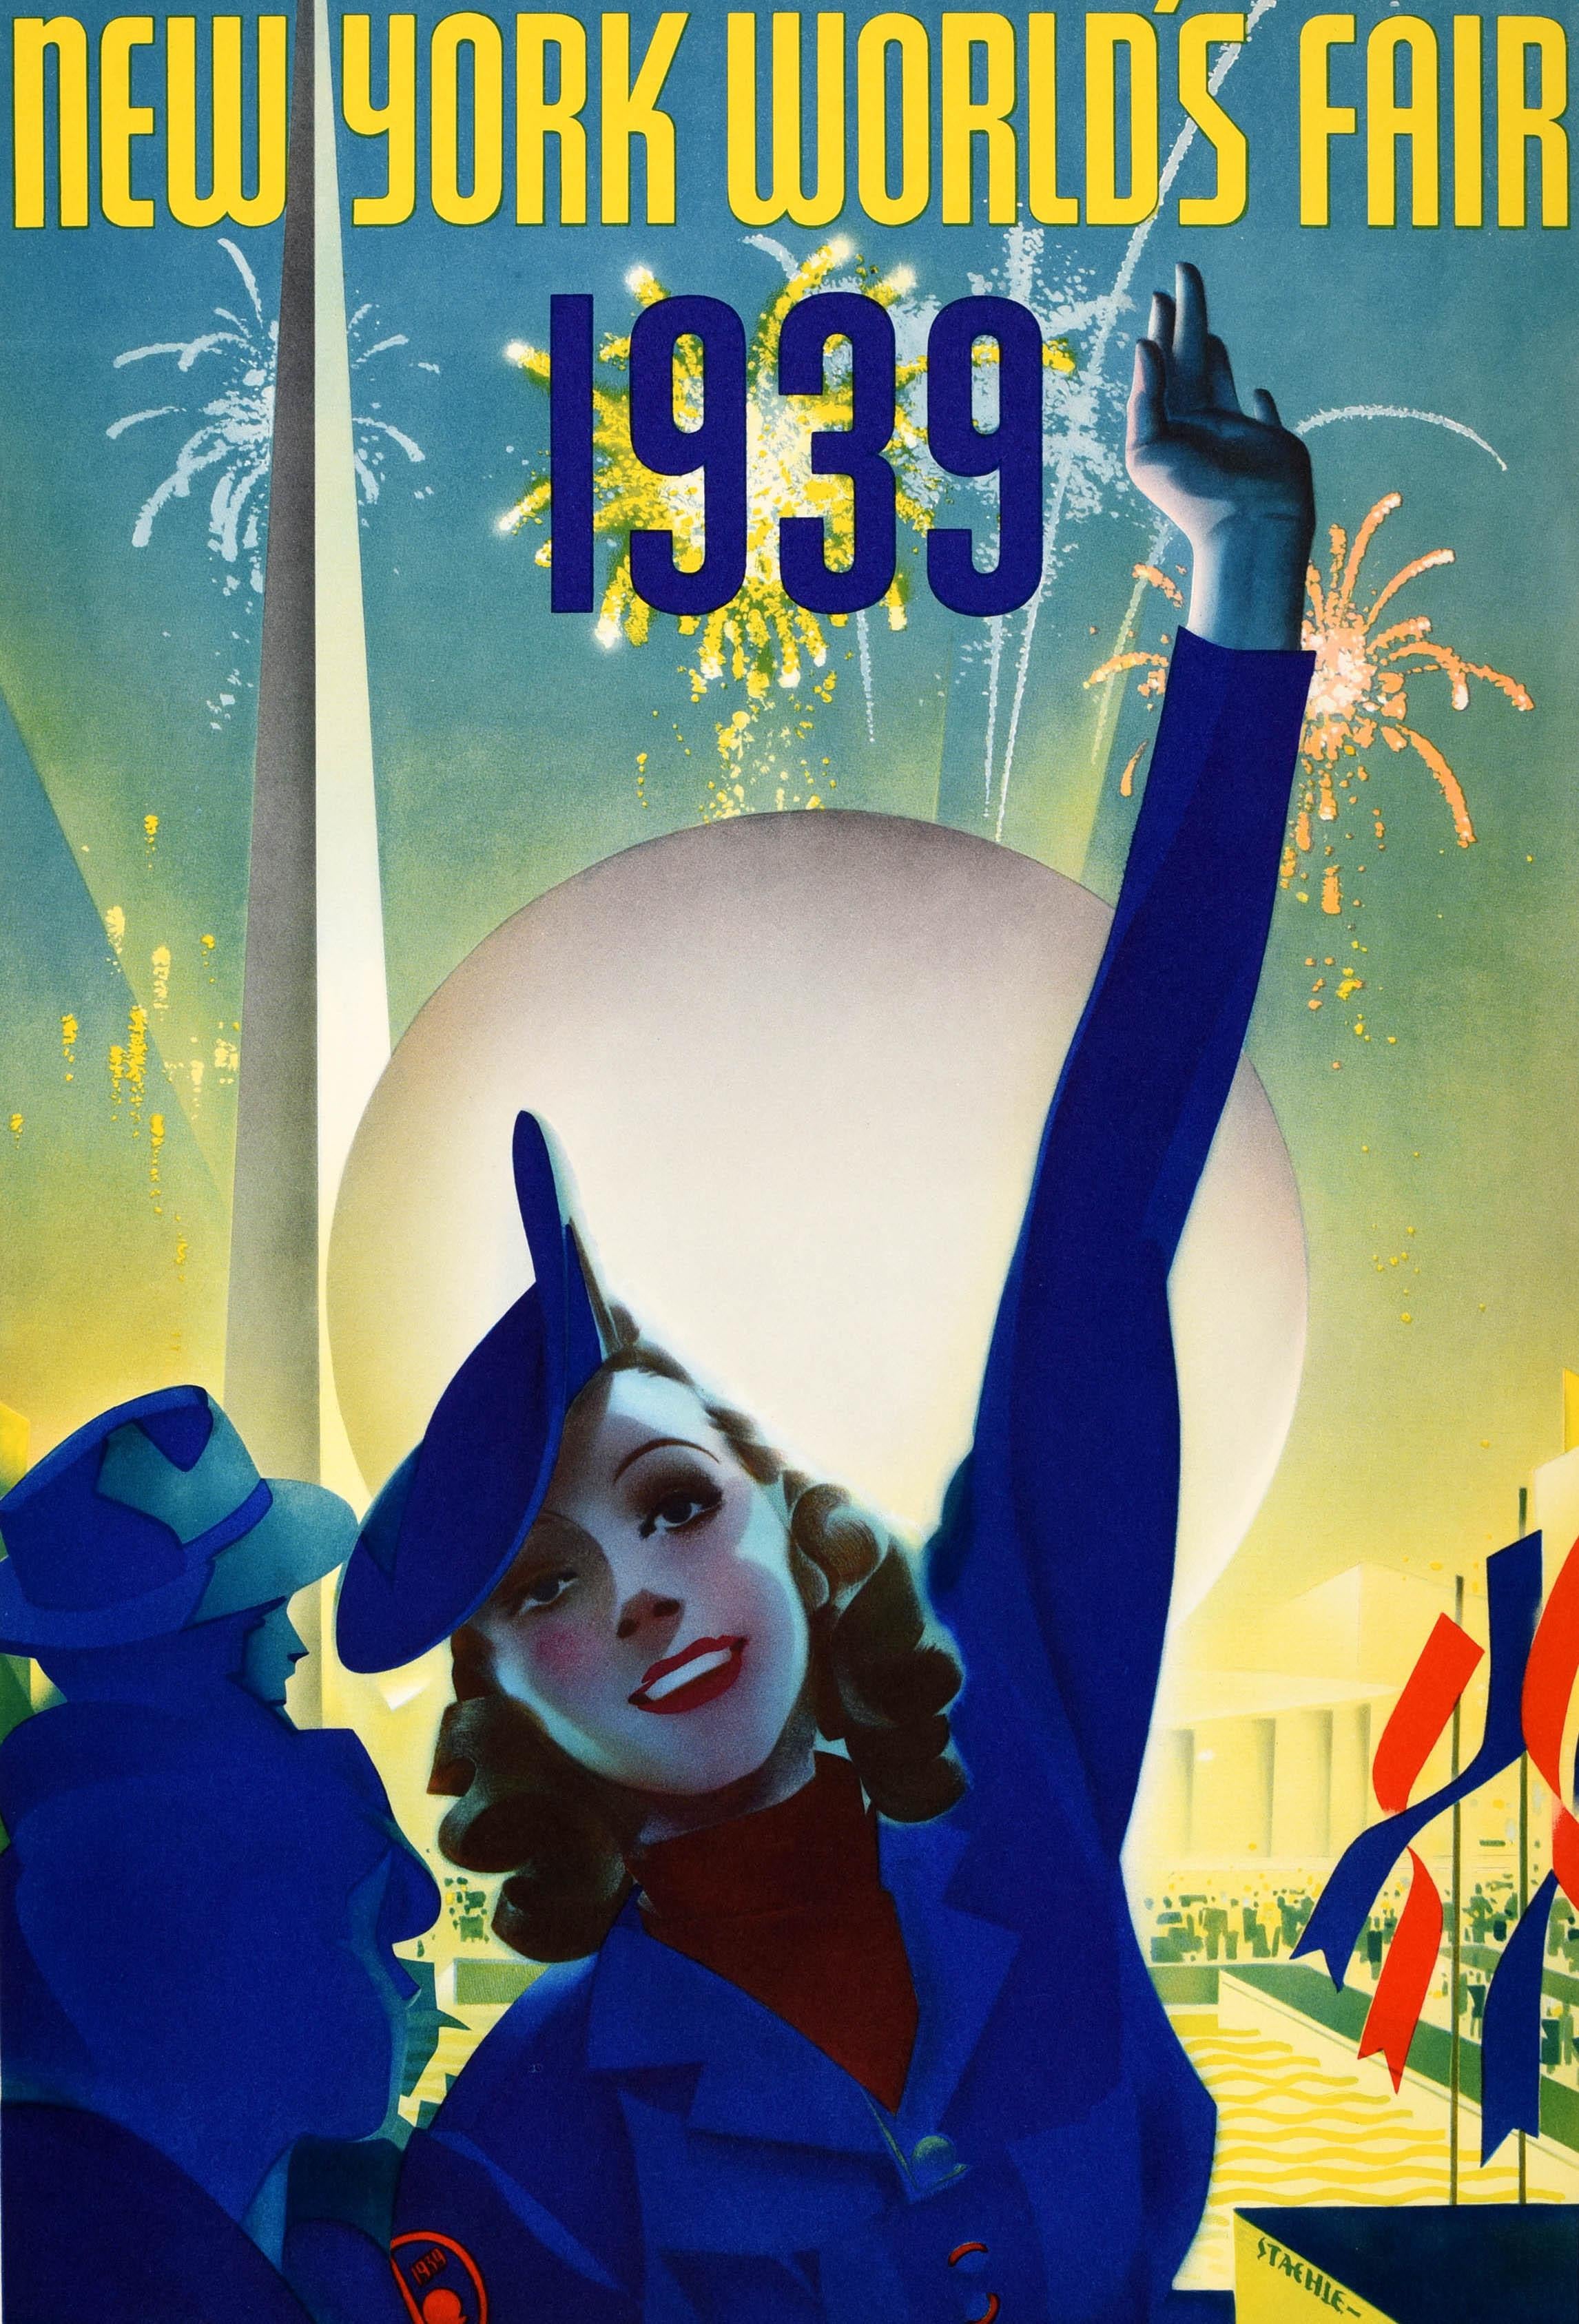 Affiche originale d'époque pour l'exposition universelle qui s'est tenue à New York au Flushing Meadows-Corona Park du 30 avril 1939 au 31 octobre 1940. Grand dessin Art déco d'une jeune femme souriante portant un chapeau élégant et levant un bras